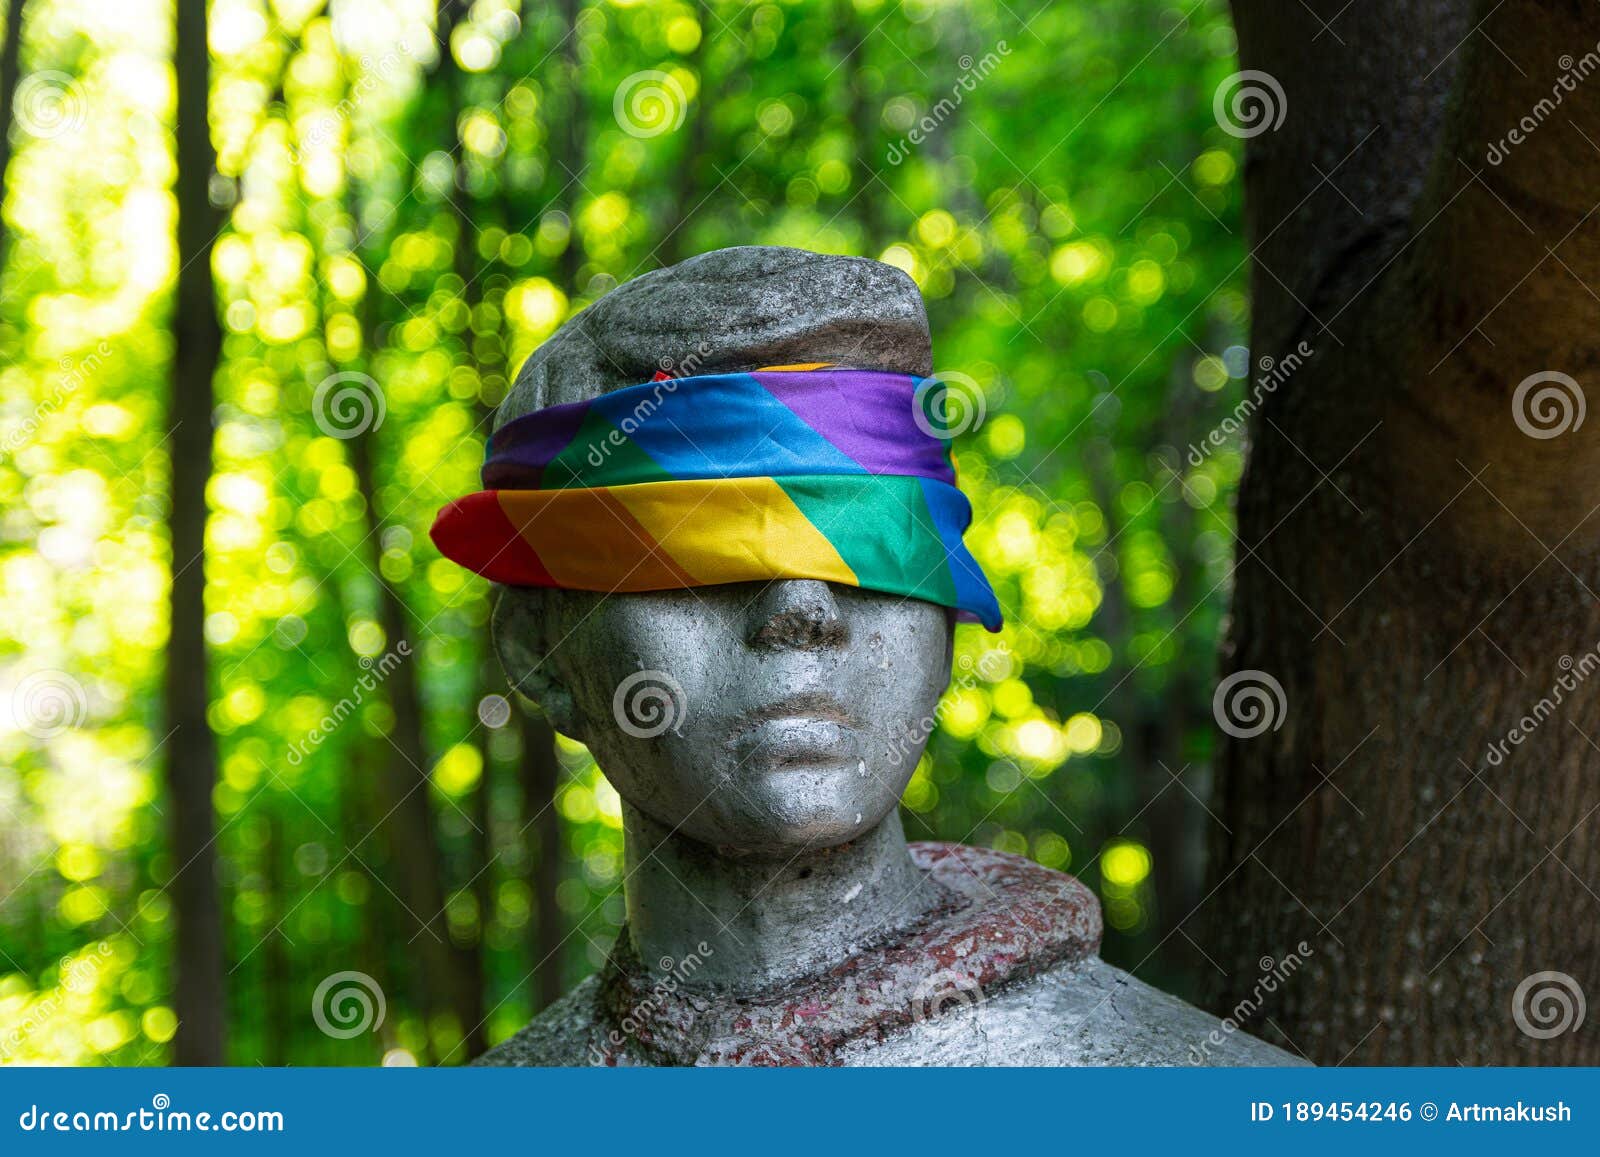 Rainbow Blindfolds